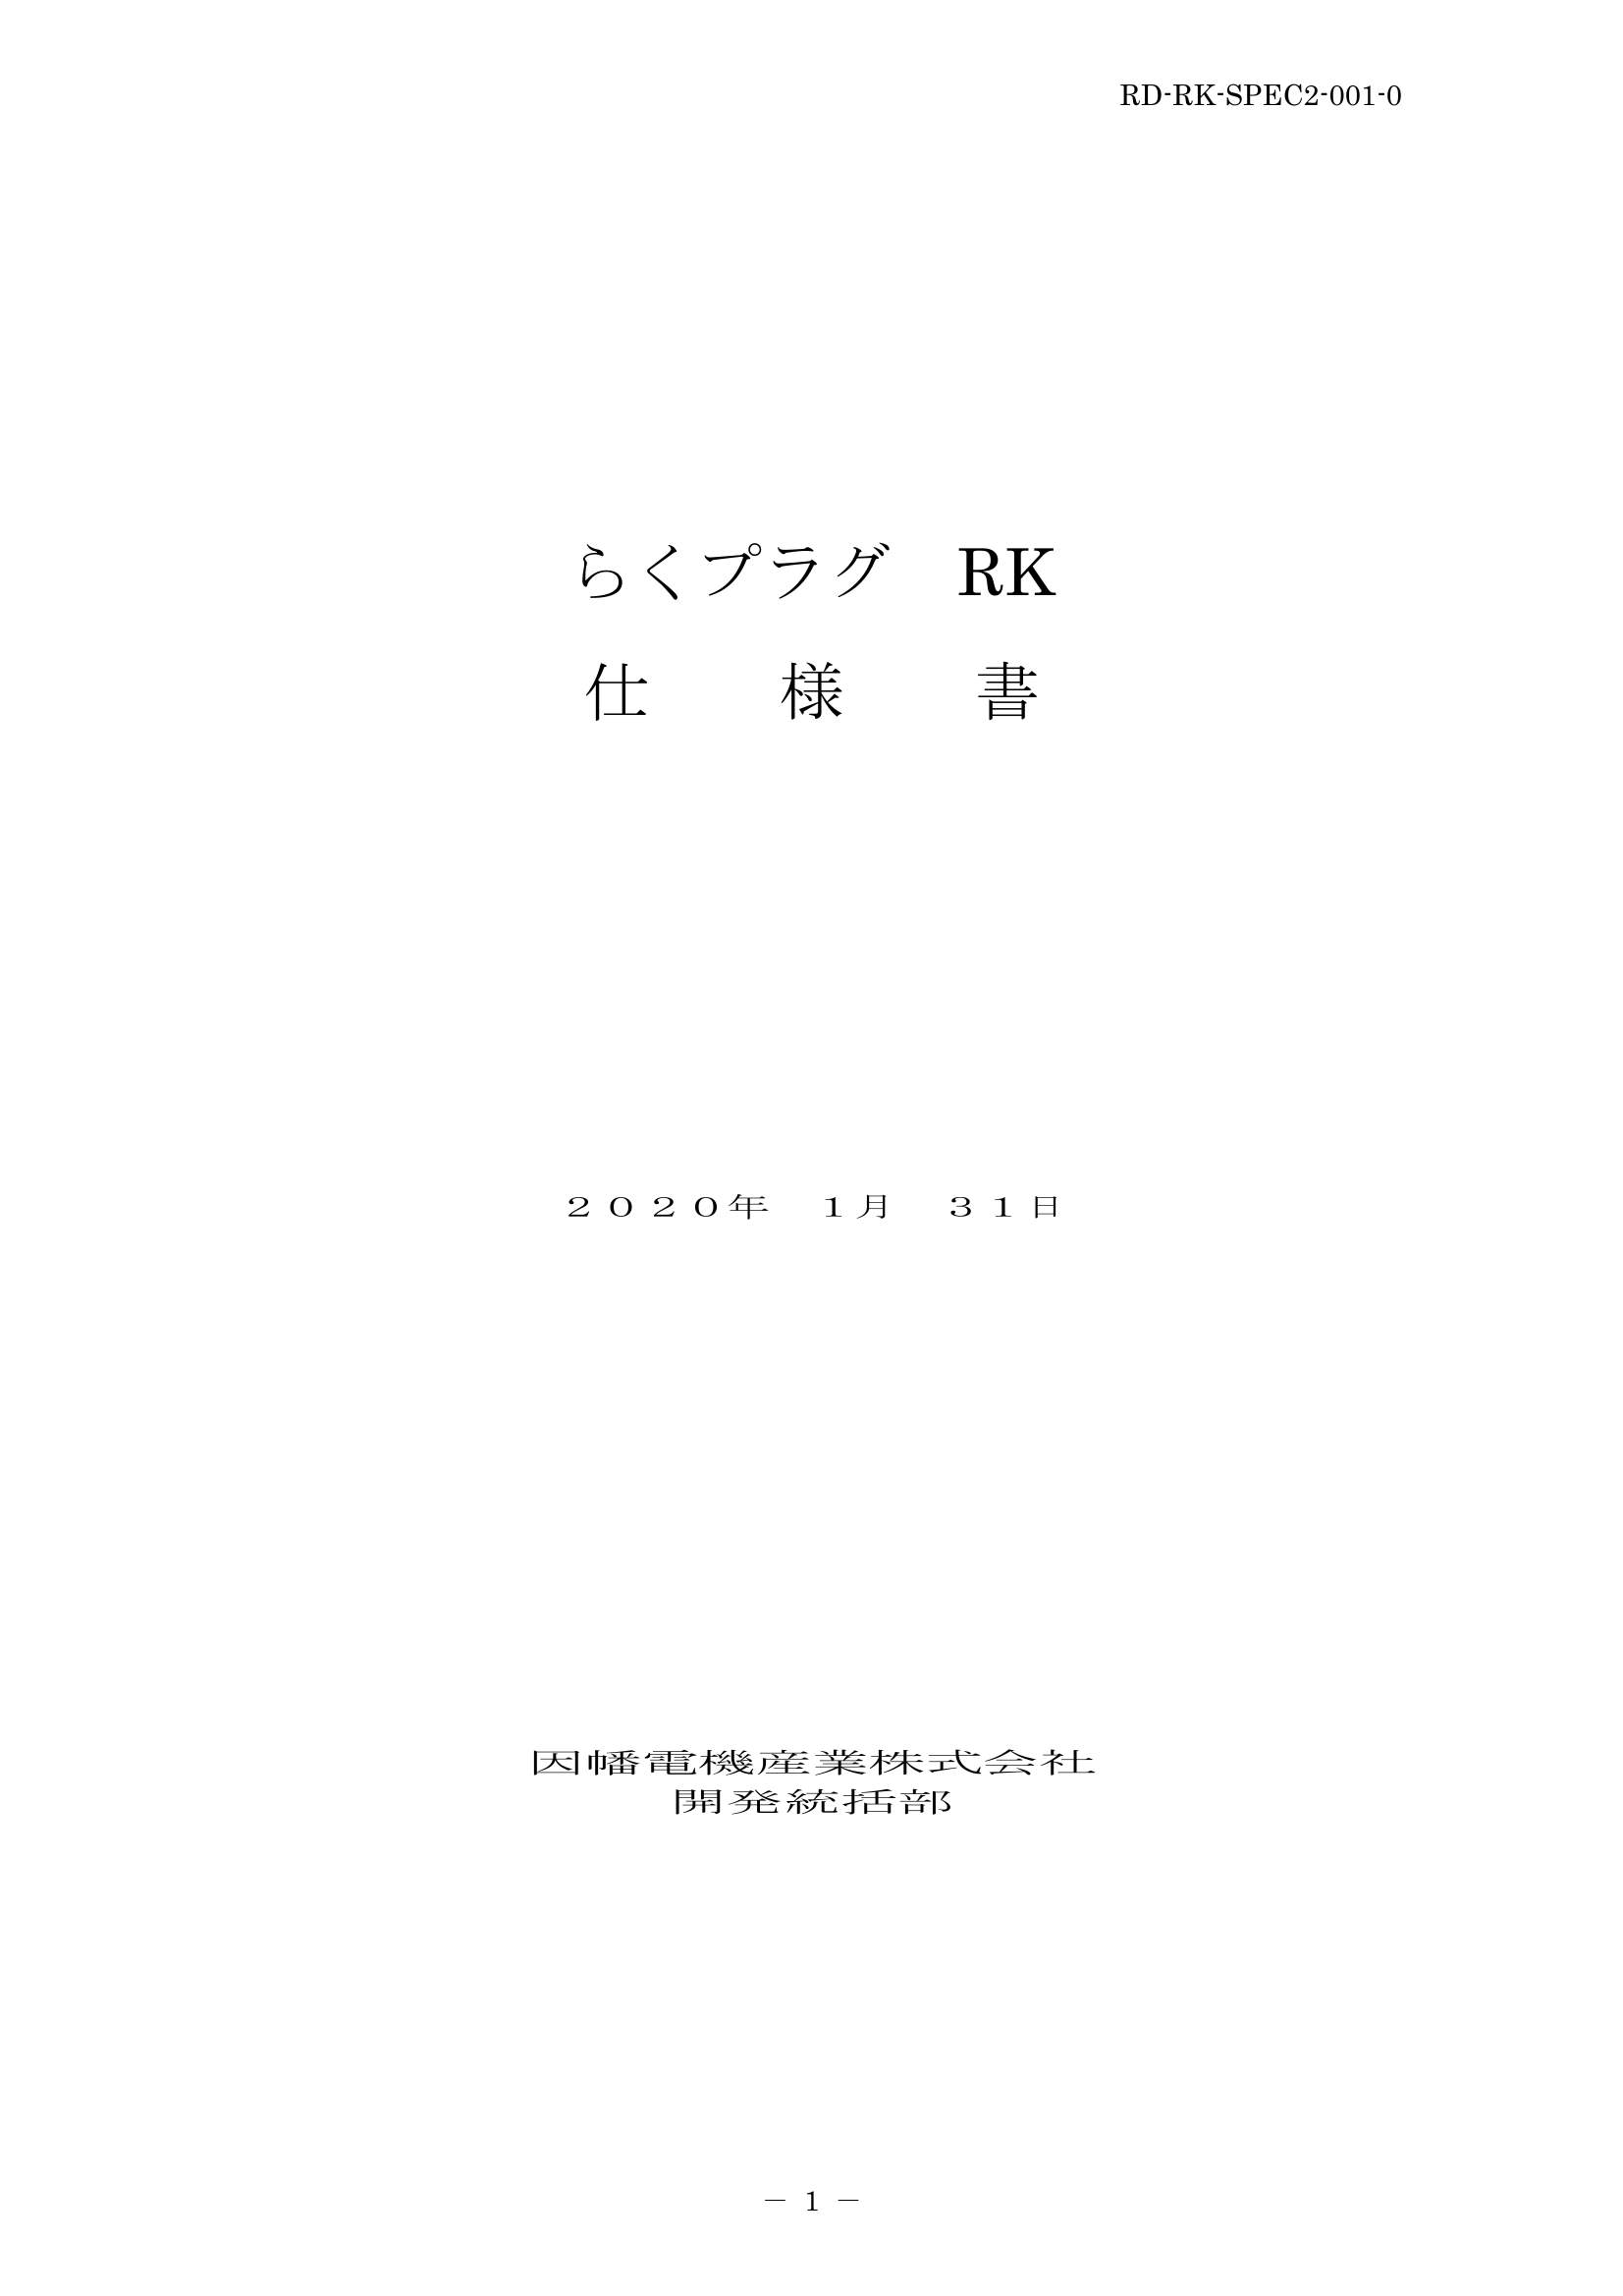 RK_仕様書_20200131.pdf